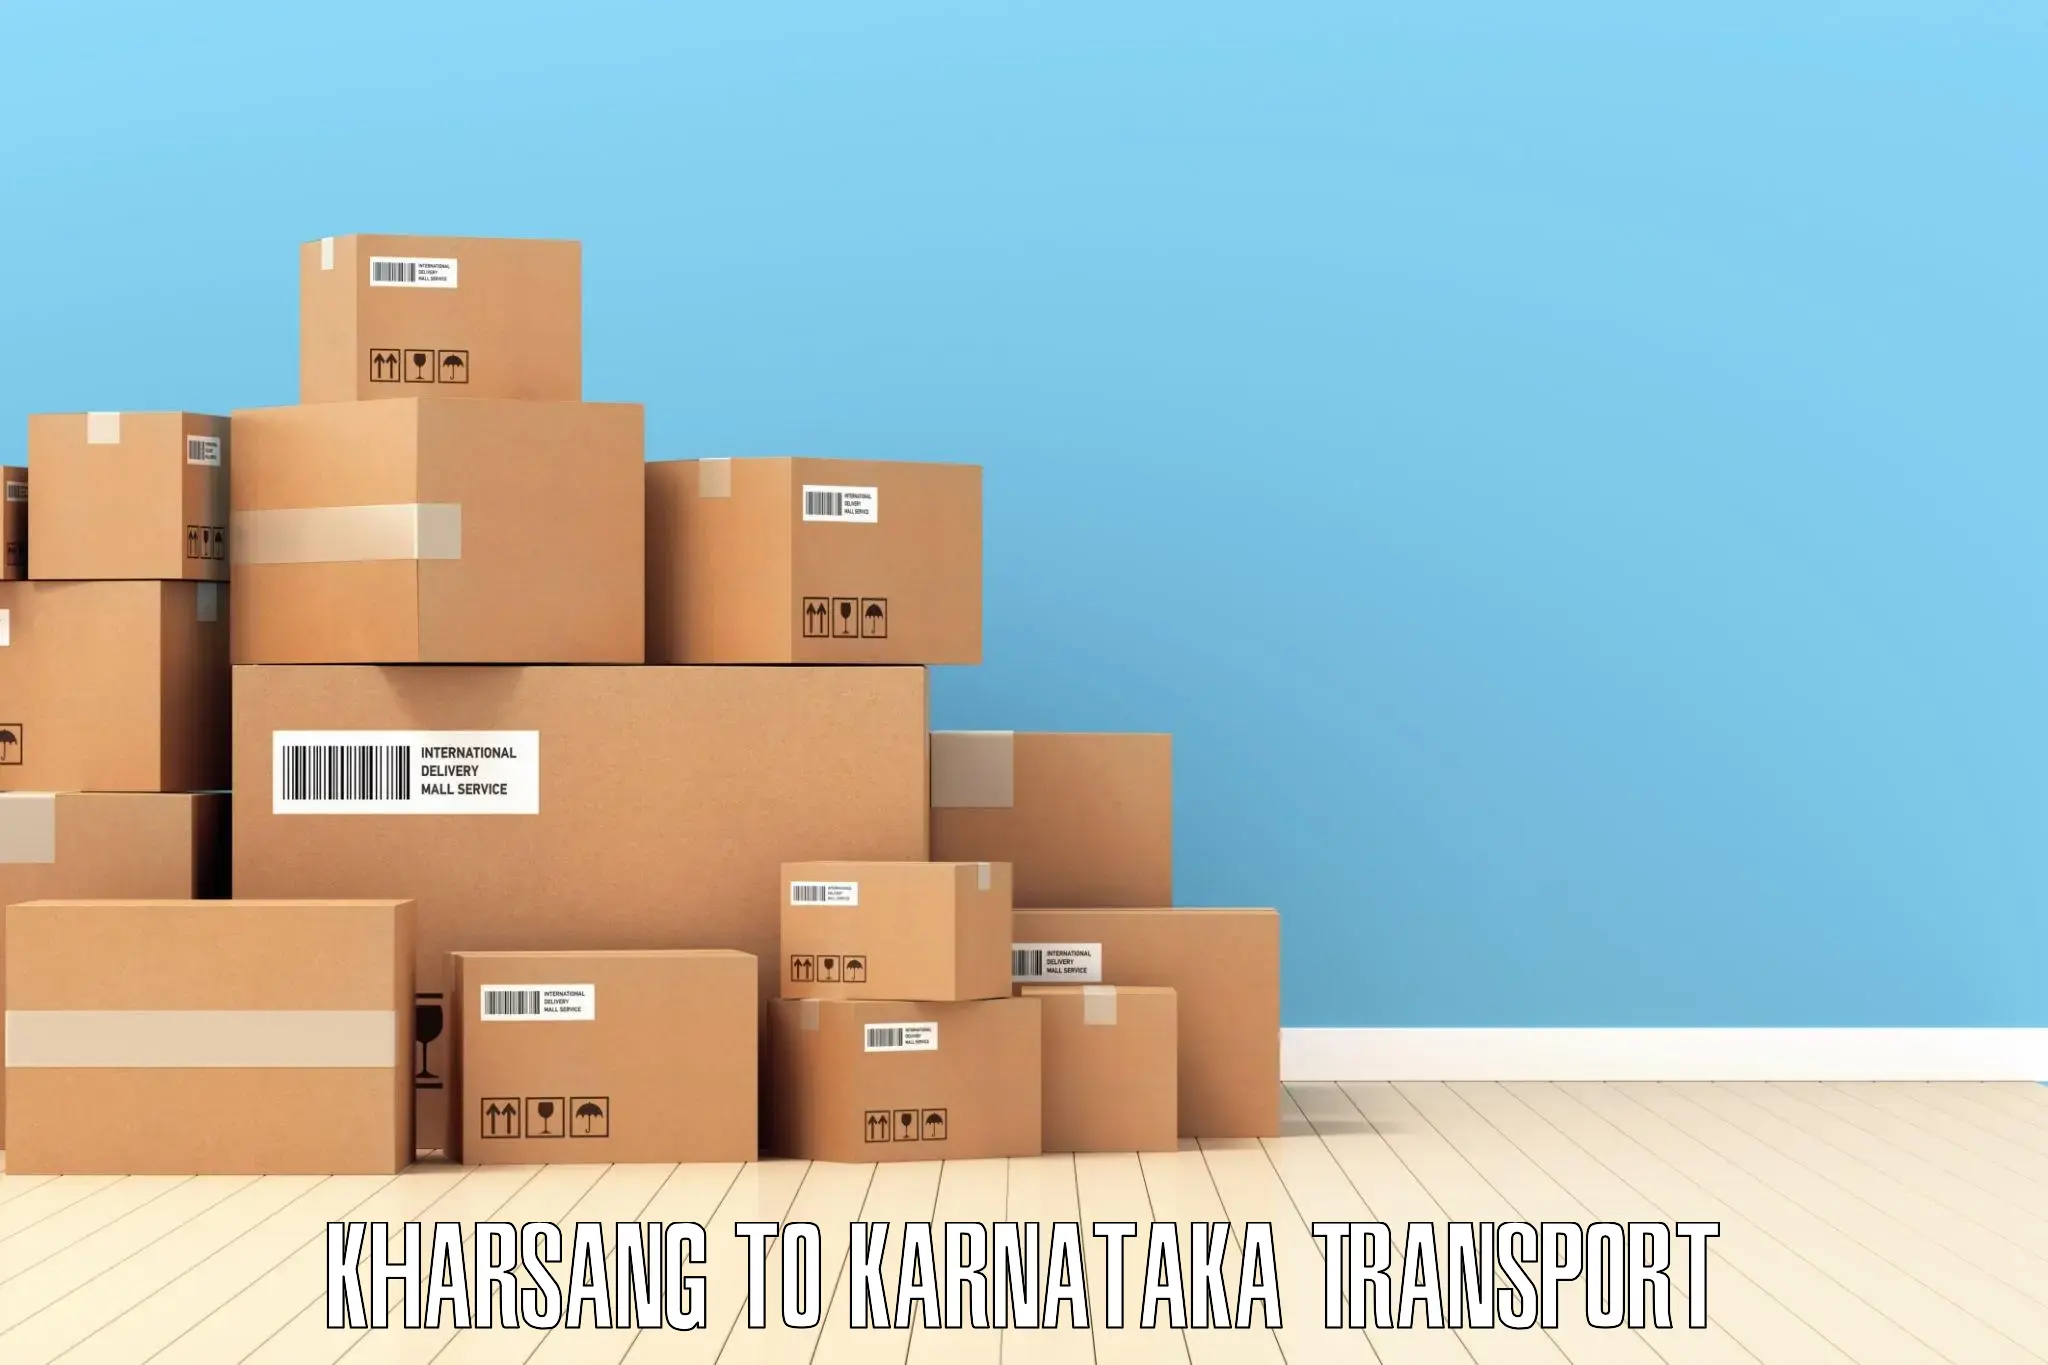 Delivery service Kharsang to Basavana Bagewadi